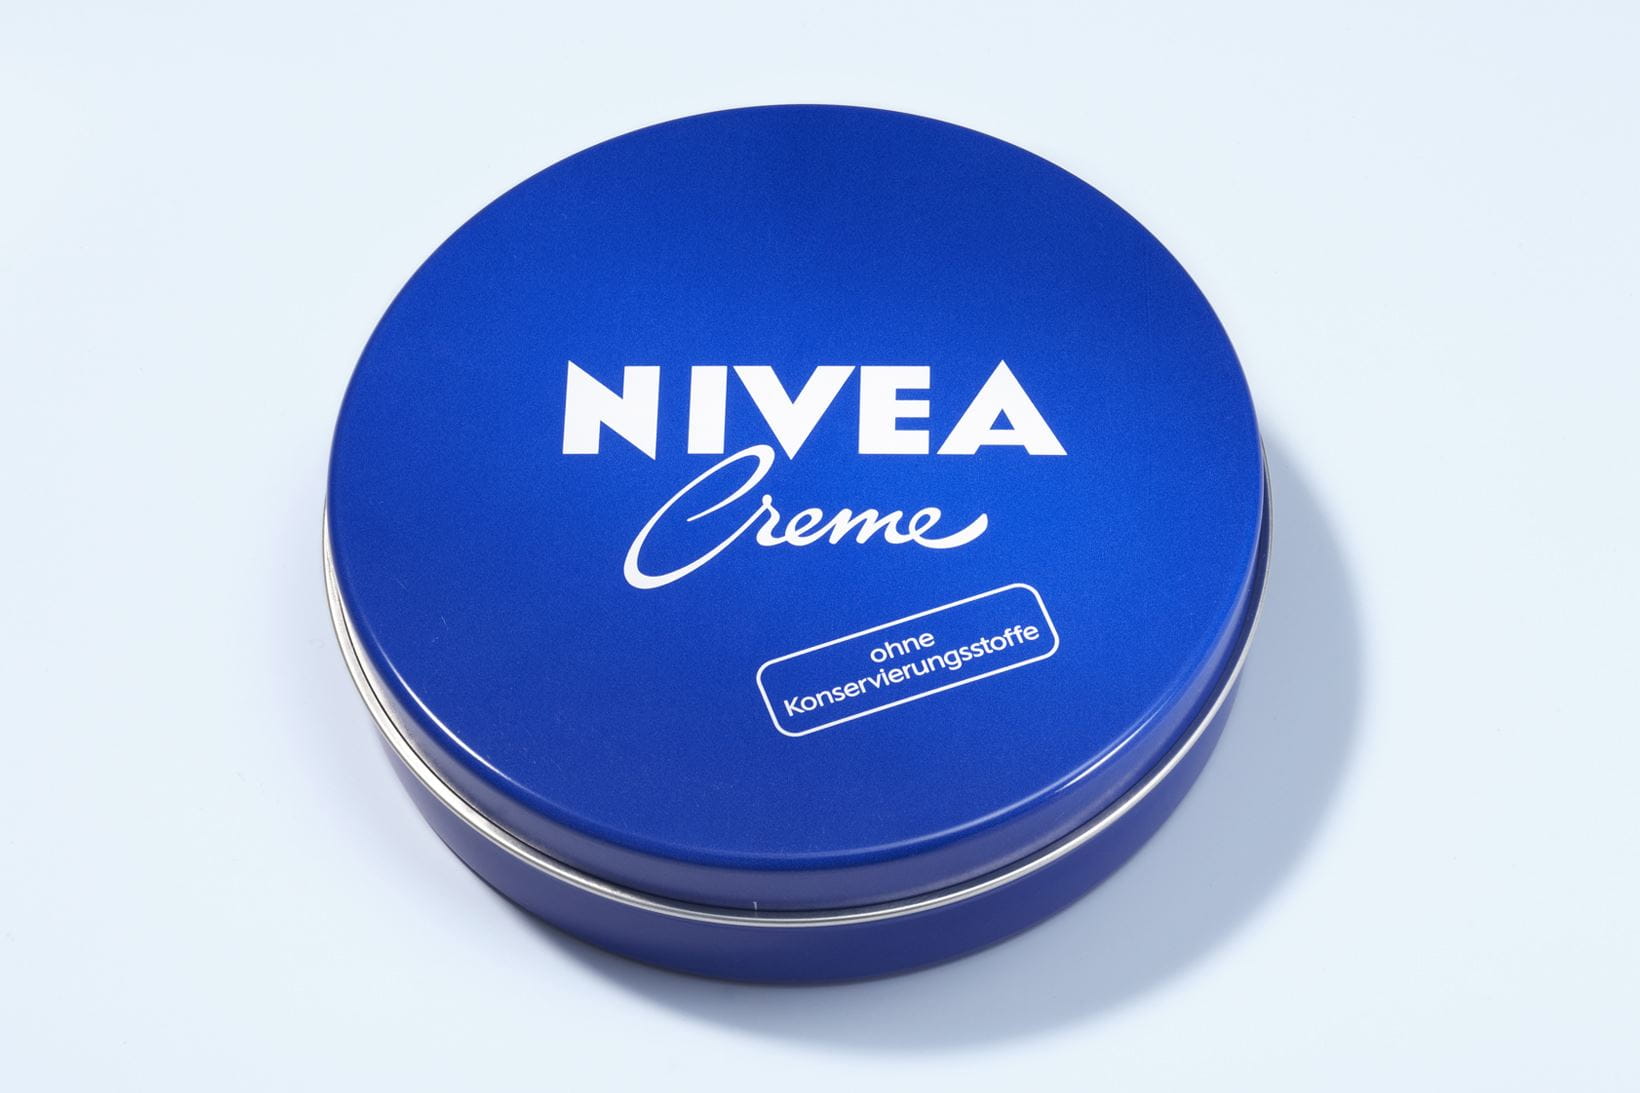 La crème NIVEA en 1993